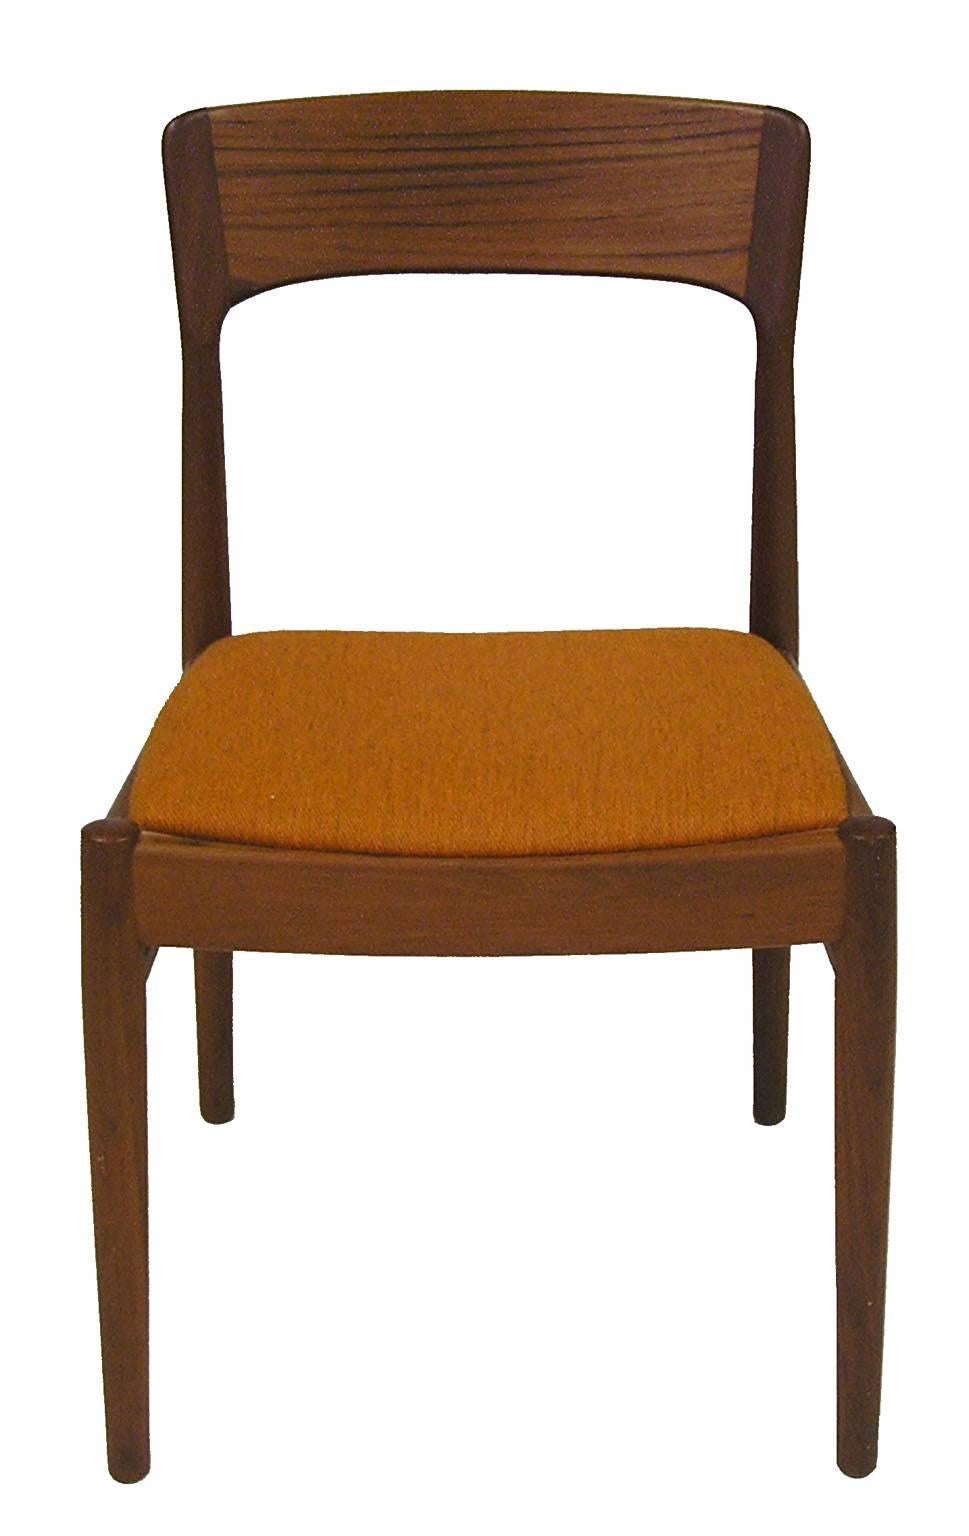 1960s Danish Teak Chairs by Kai Kristiansen, Pair In Excellent Condition In Winnipeg, Manitoba